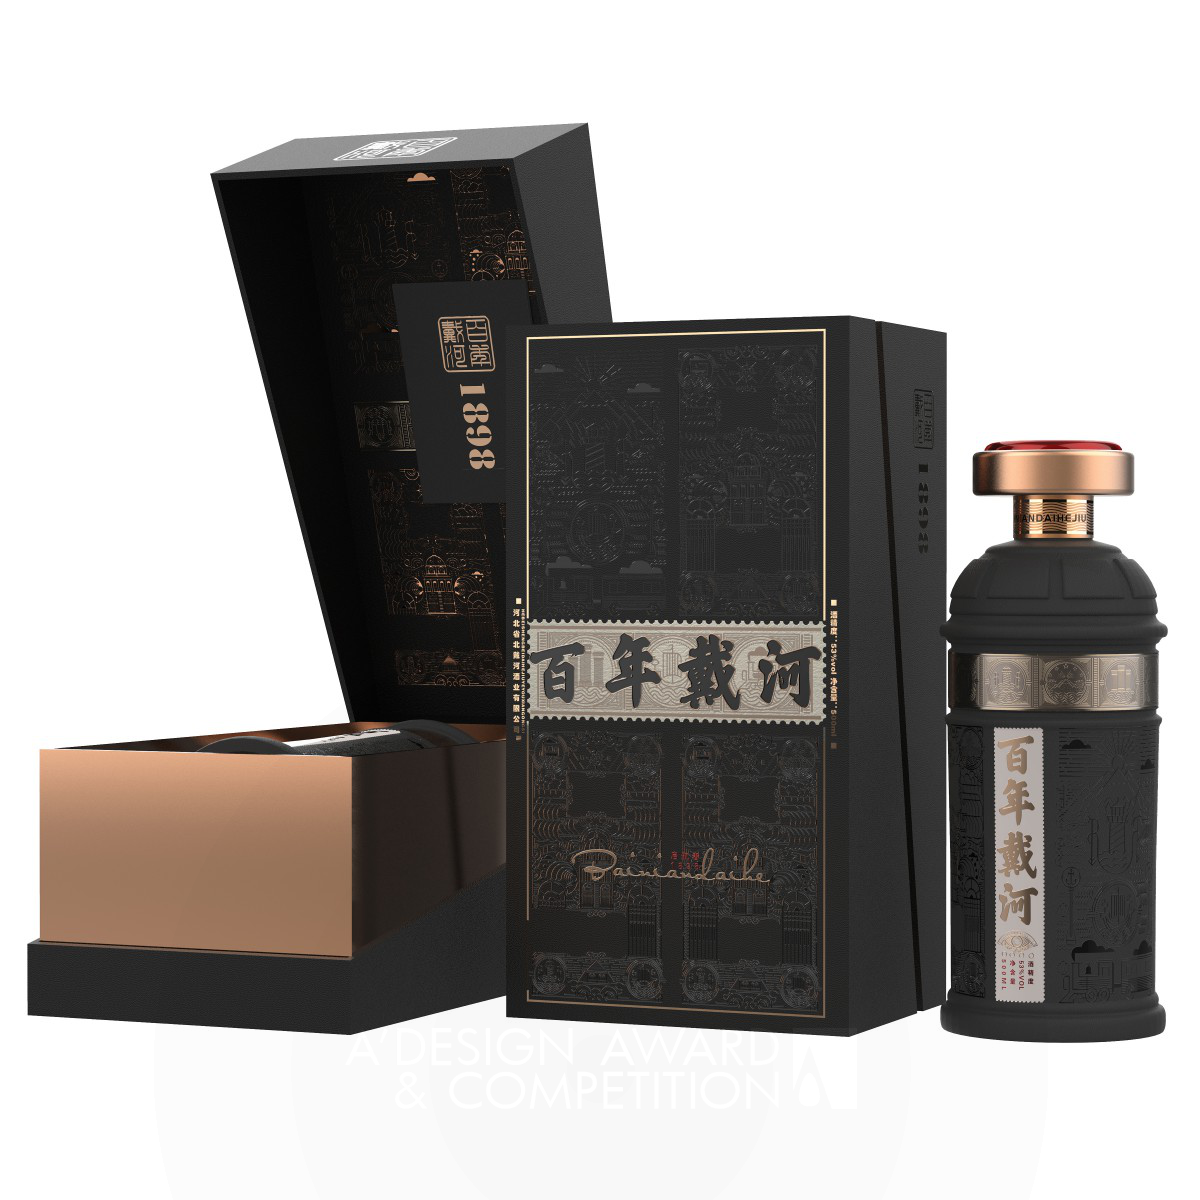 Bainiandaihe Liquor Packaging by Zhipeng Zhang